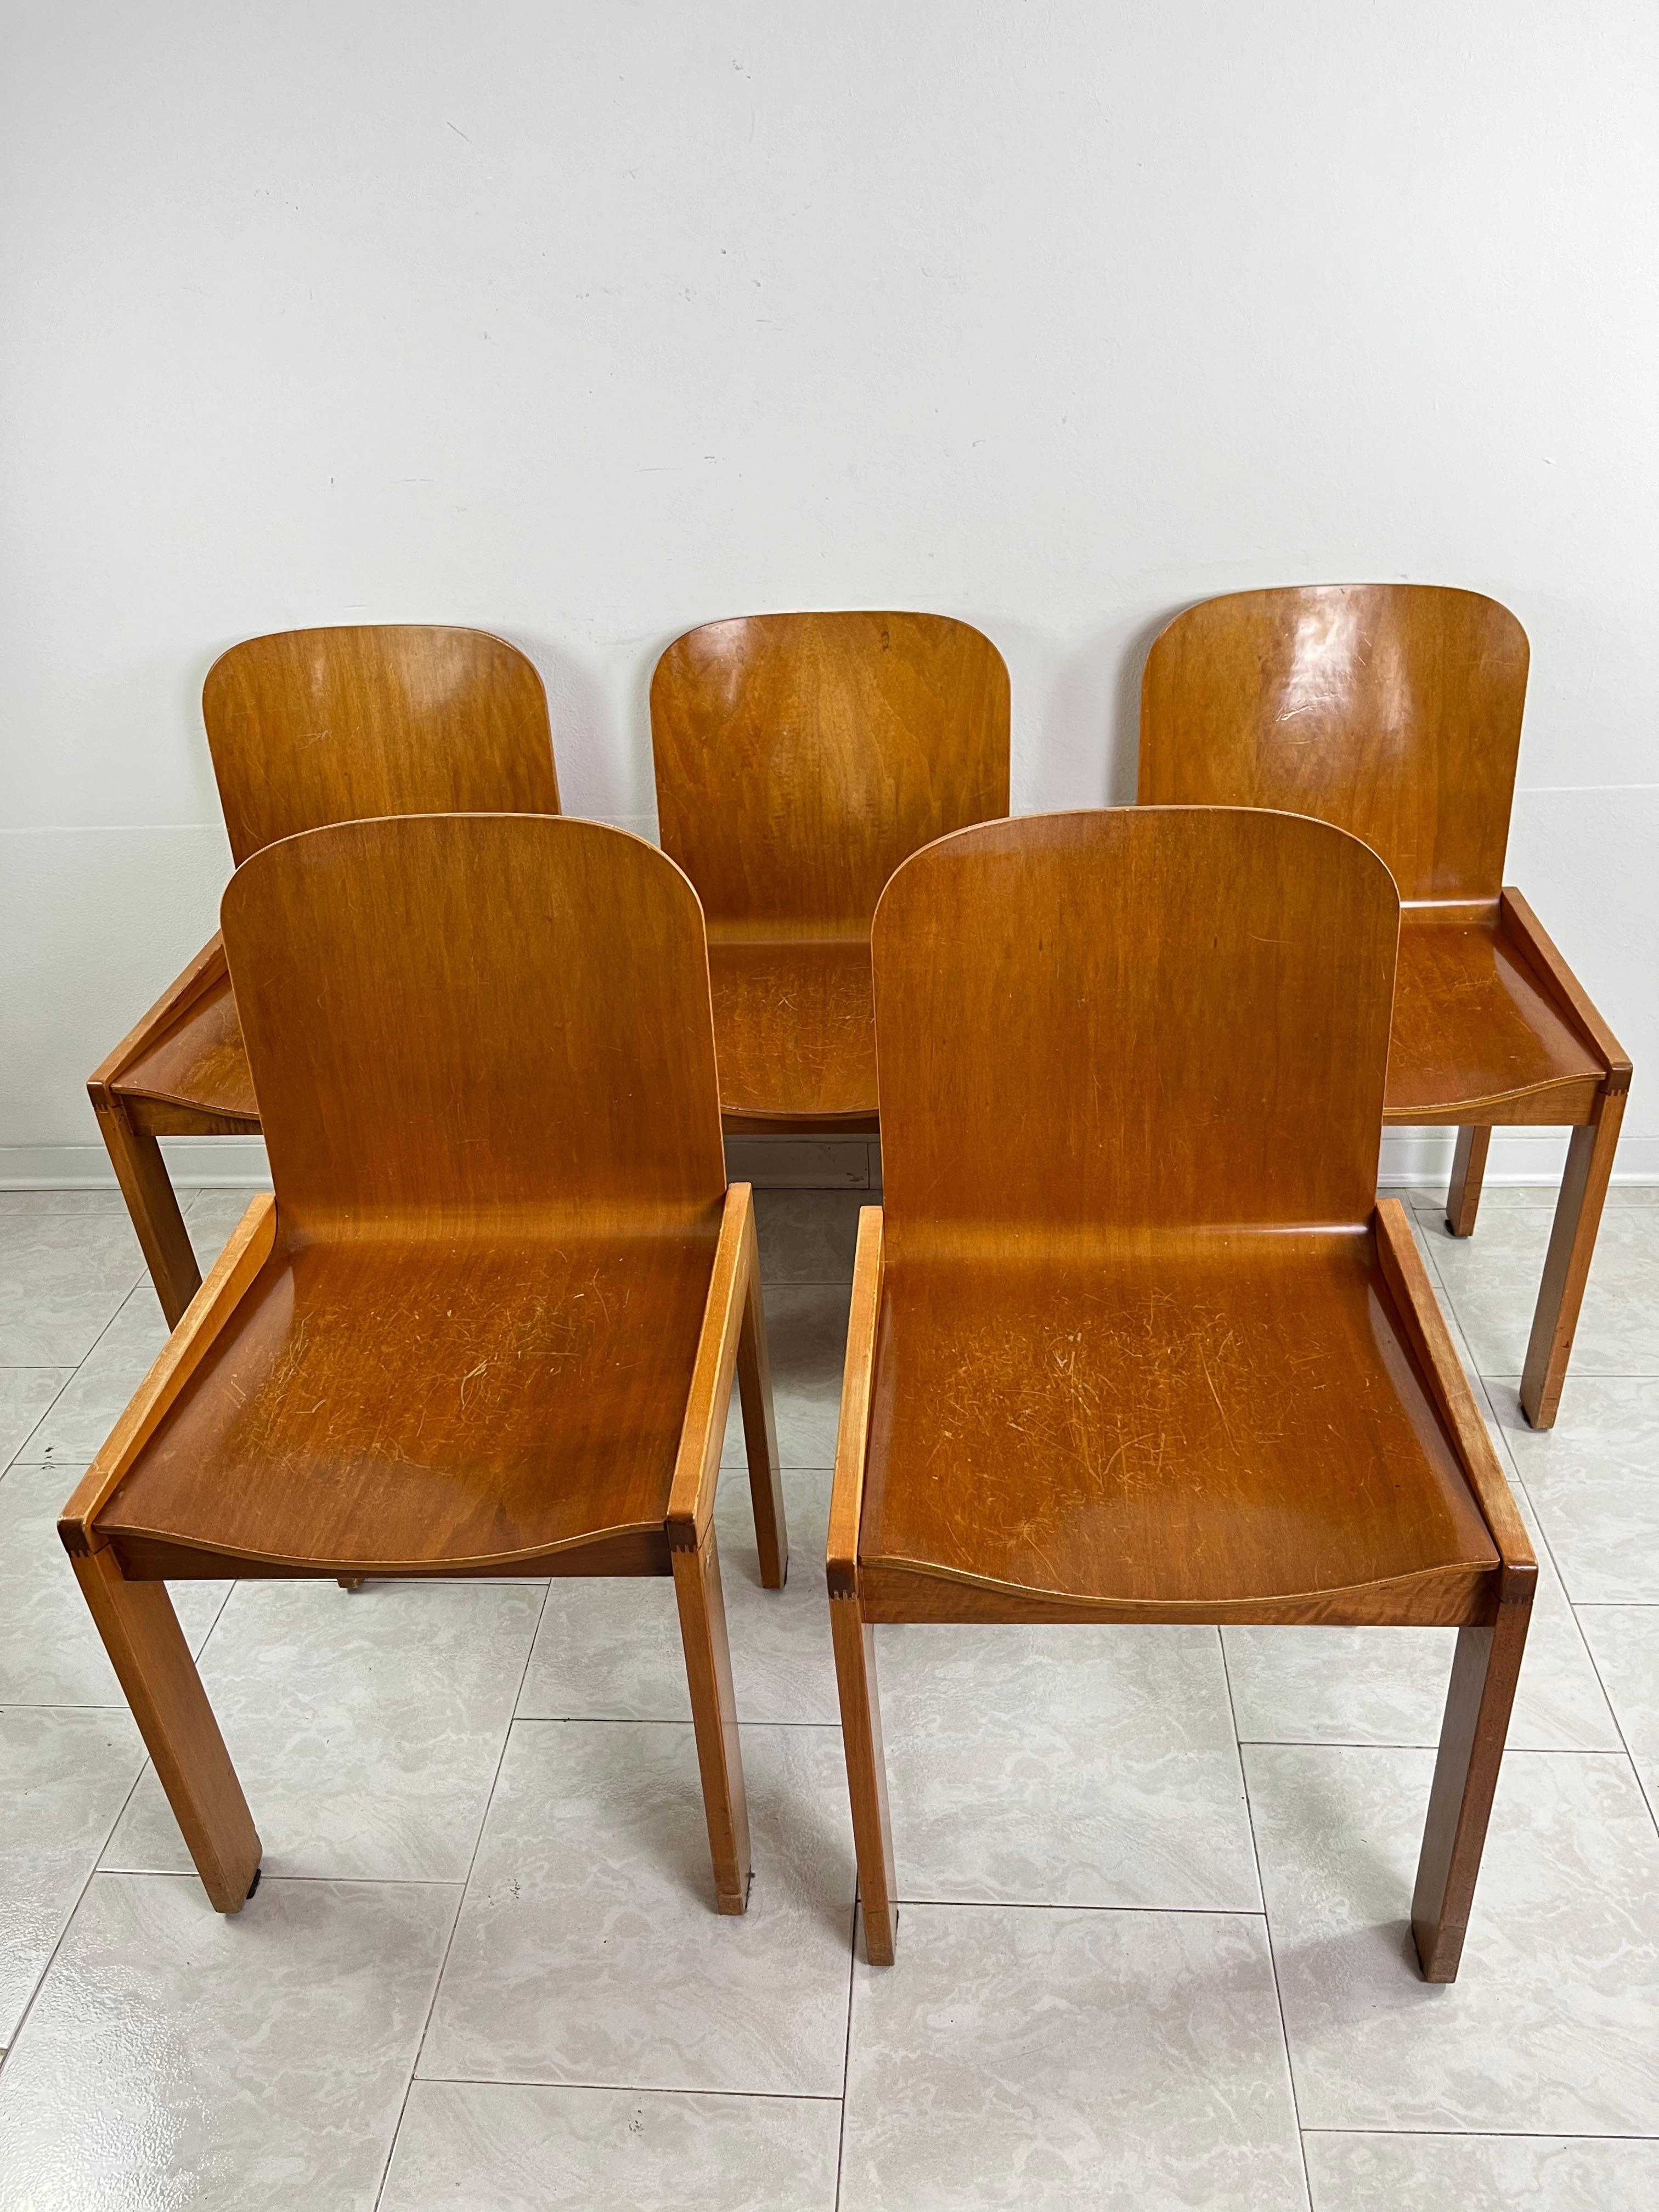 Ensemble de 5 chaises de salle à manger Molteni Vintage Mid-Century des années 1970, design italien.
Les conditions sont celles de l'époque. Après une légère restauration, intact mais avec des rayures (voir les photographies descriptives).
